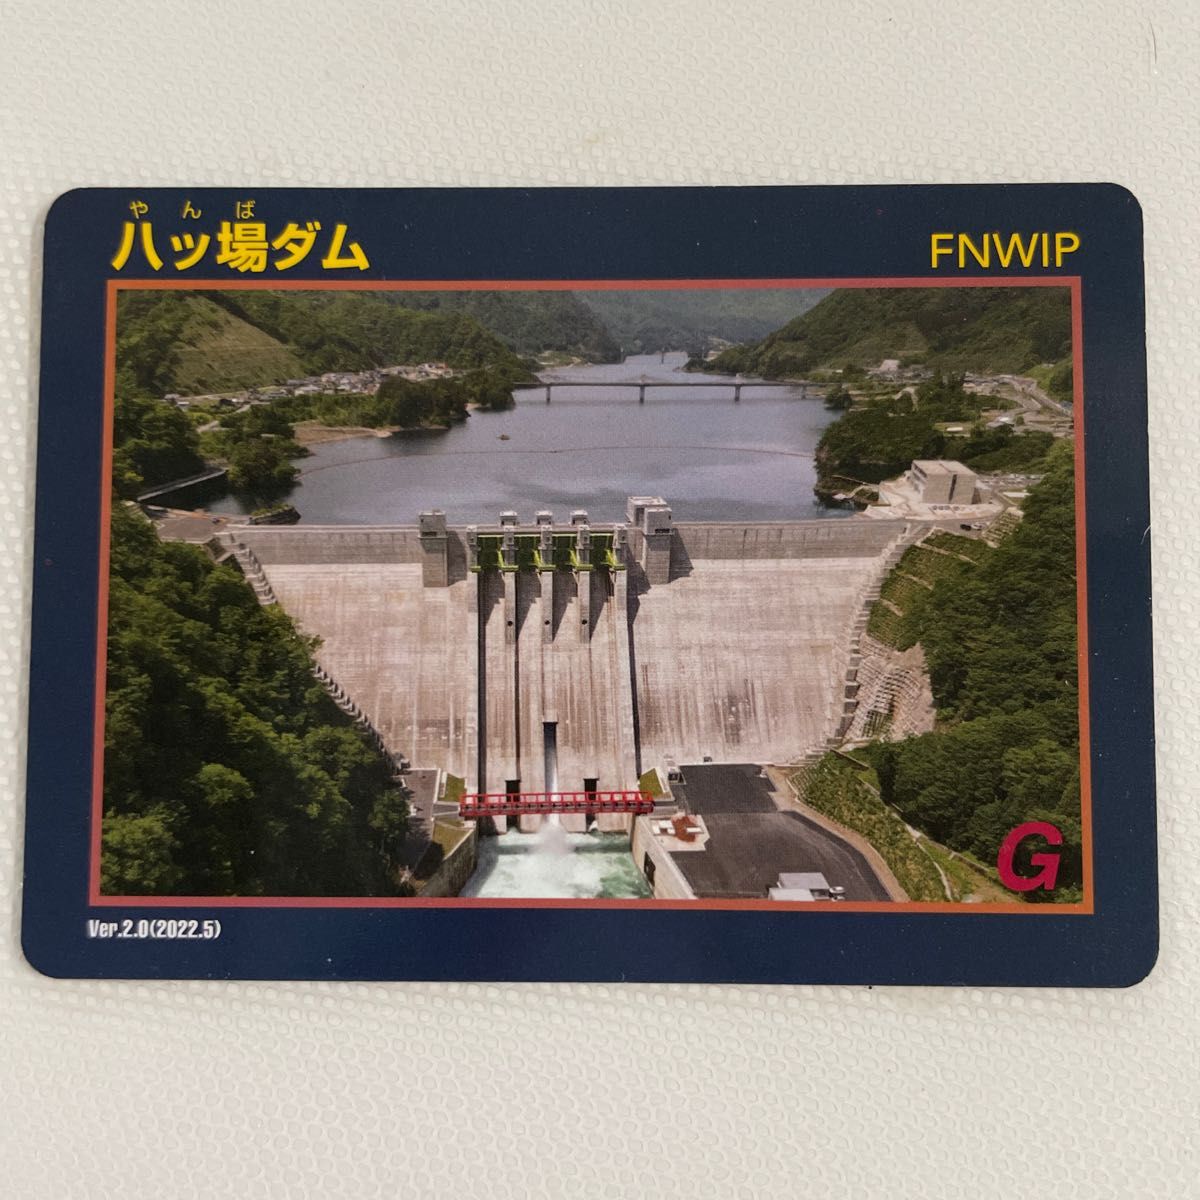 八ッ場ダム ダムカード Ver.2.0(2022.5)                   　